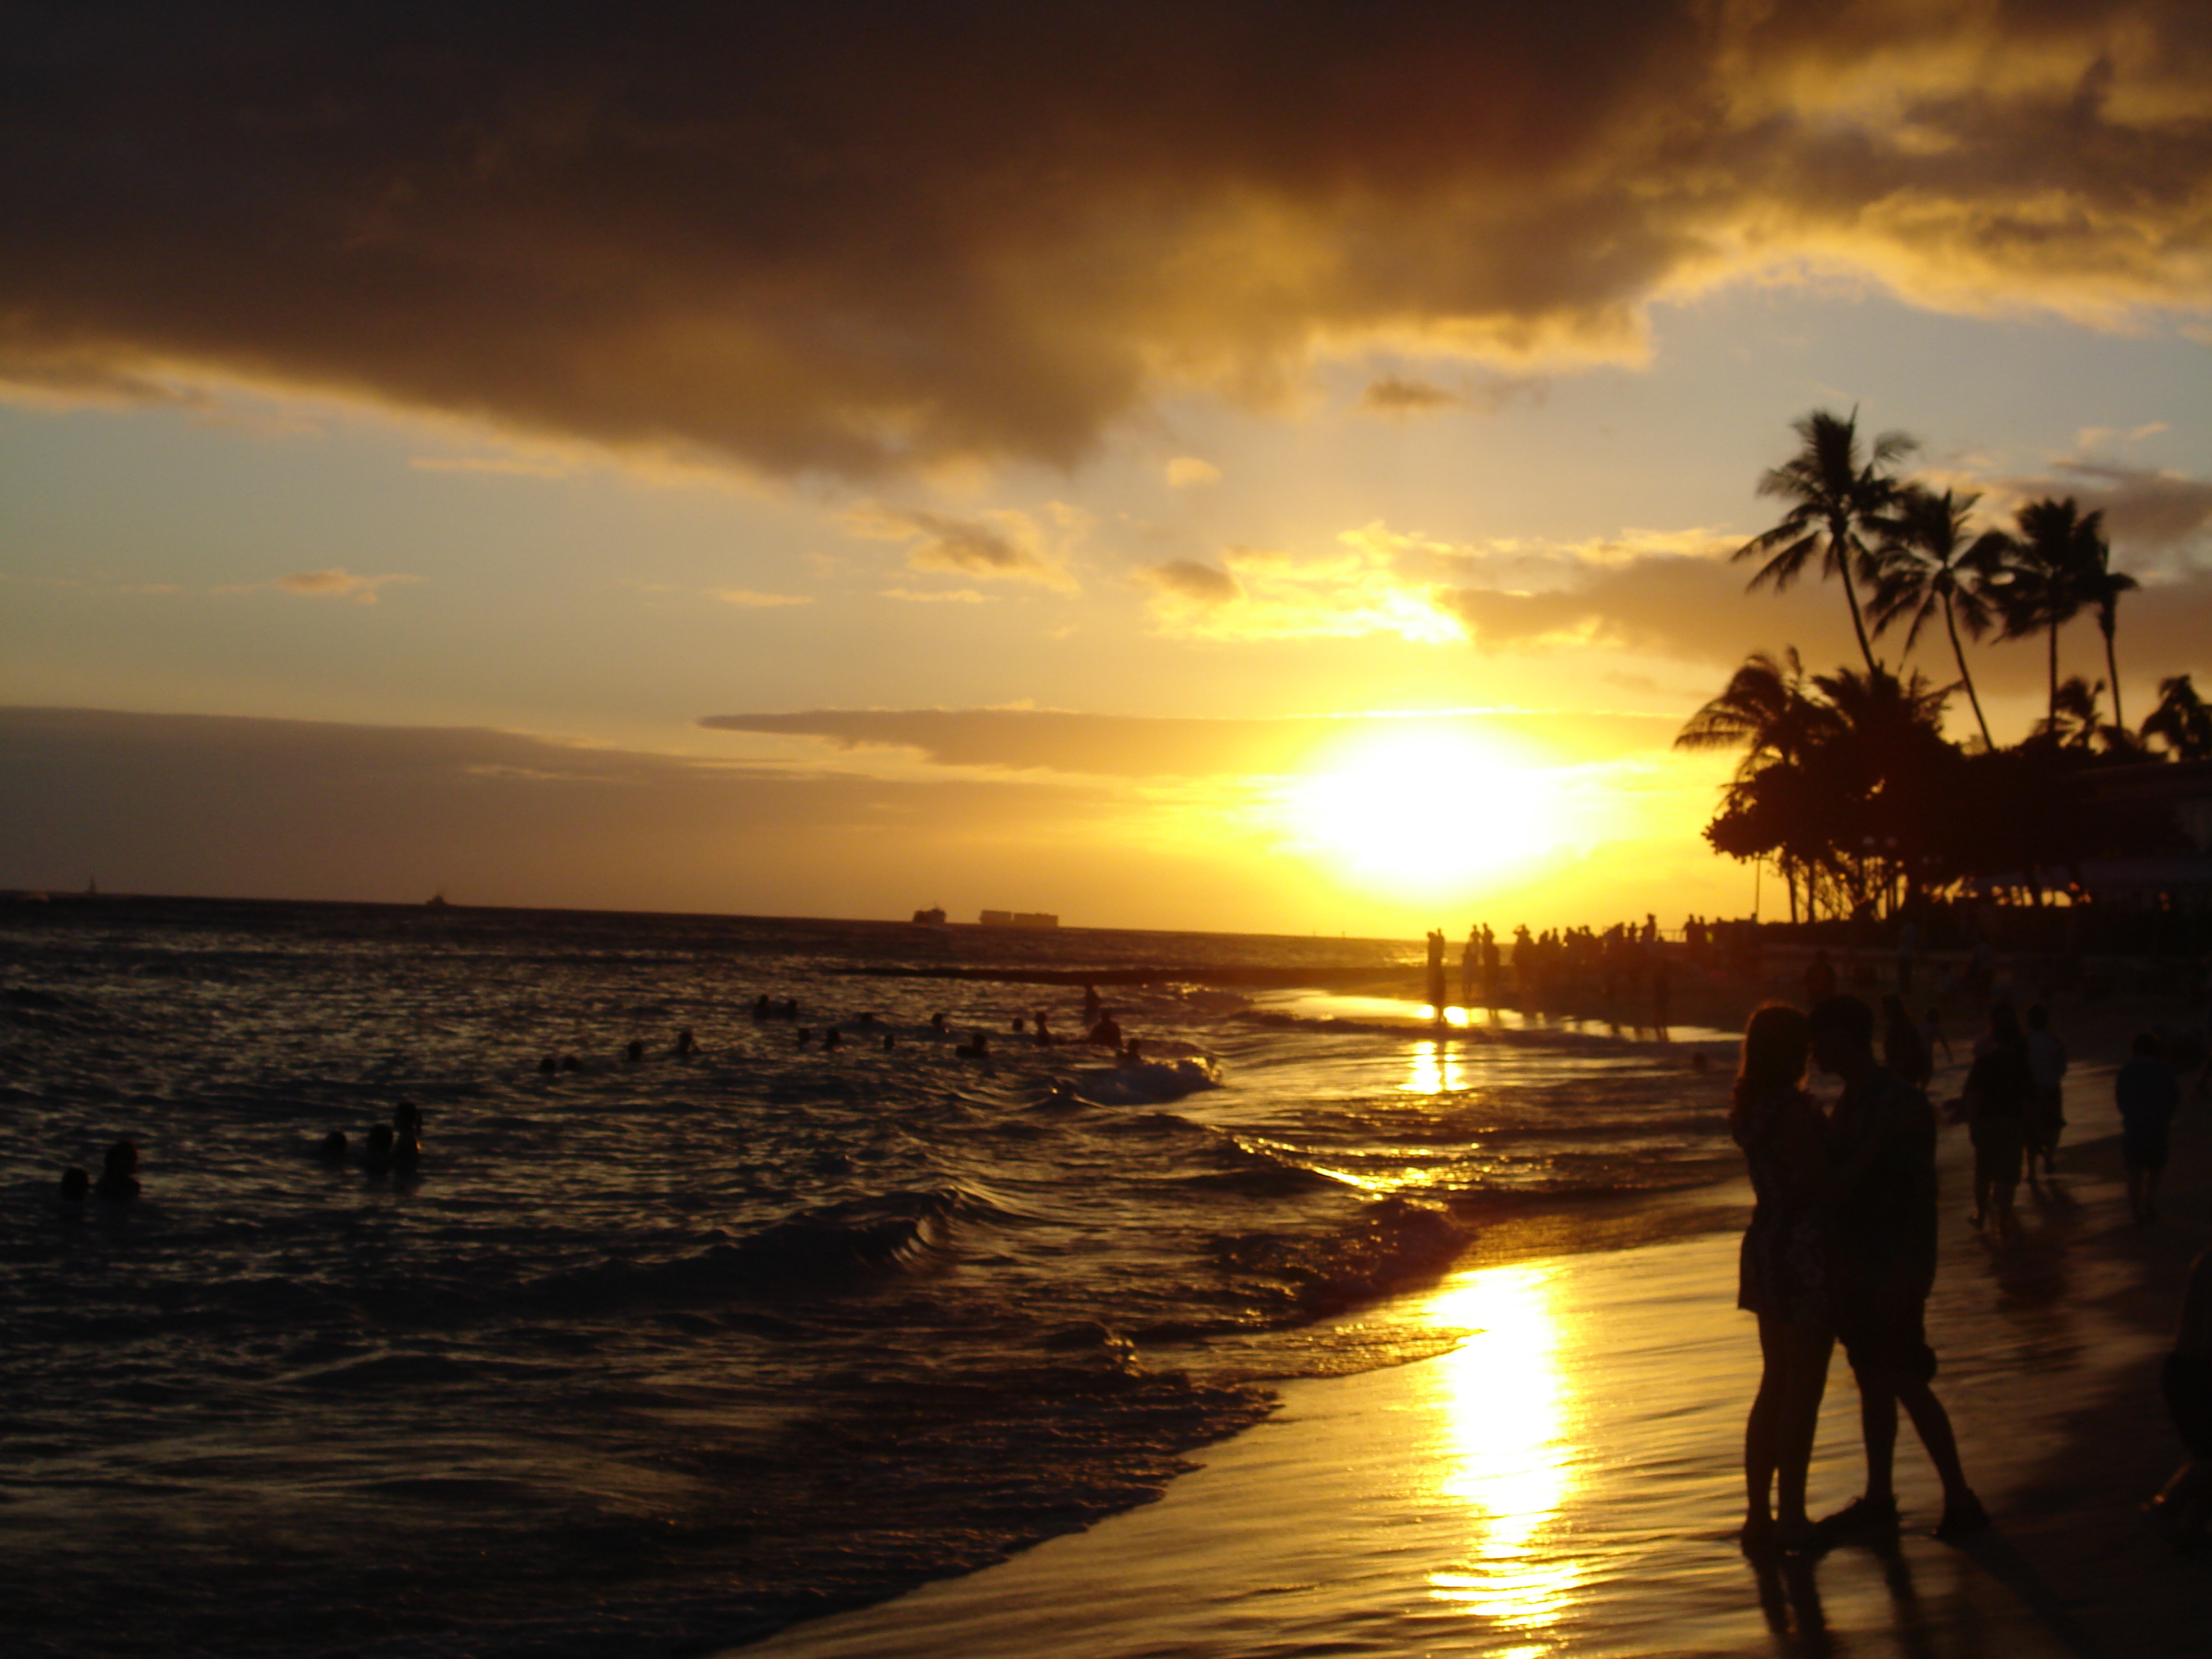 File:Waikiki Beach at Sunset.jpg